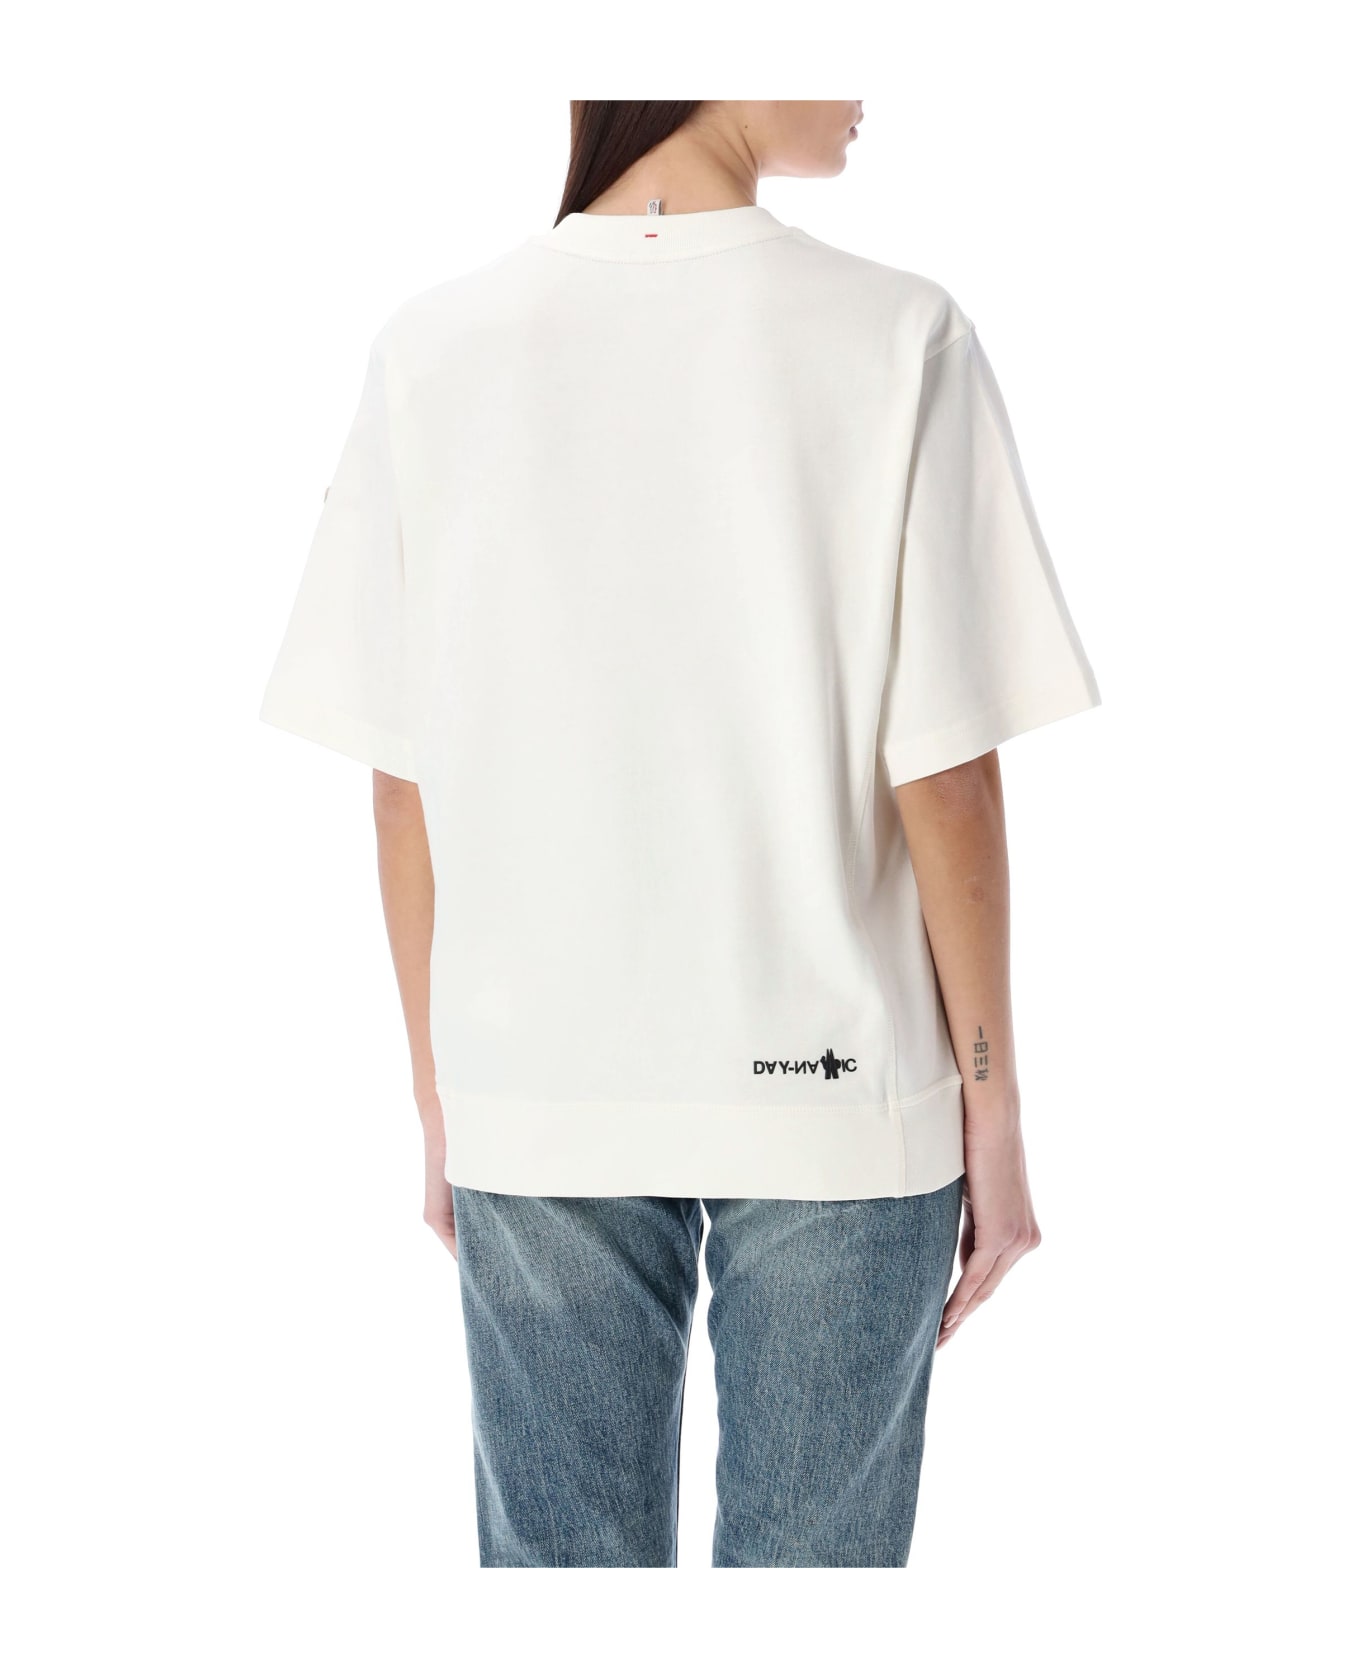 Moncler Grenoble T-shirt Tmm - WHITE